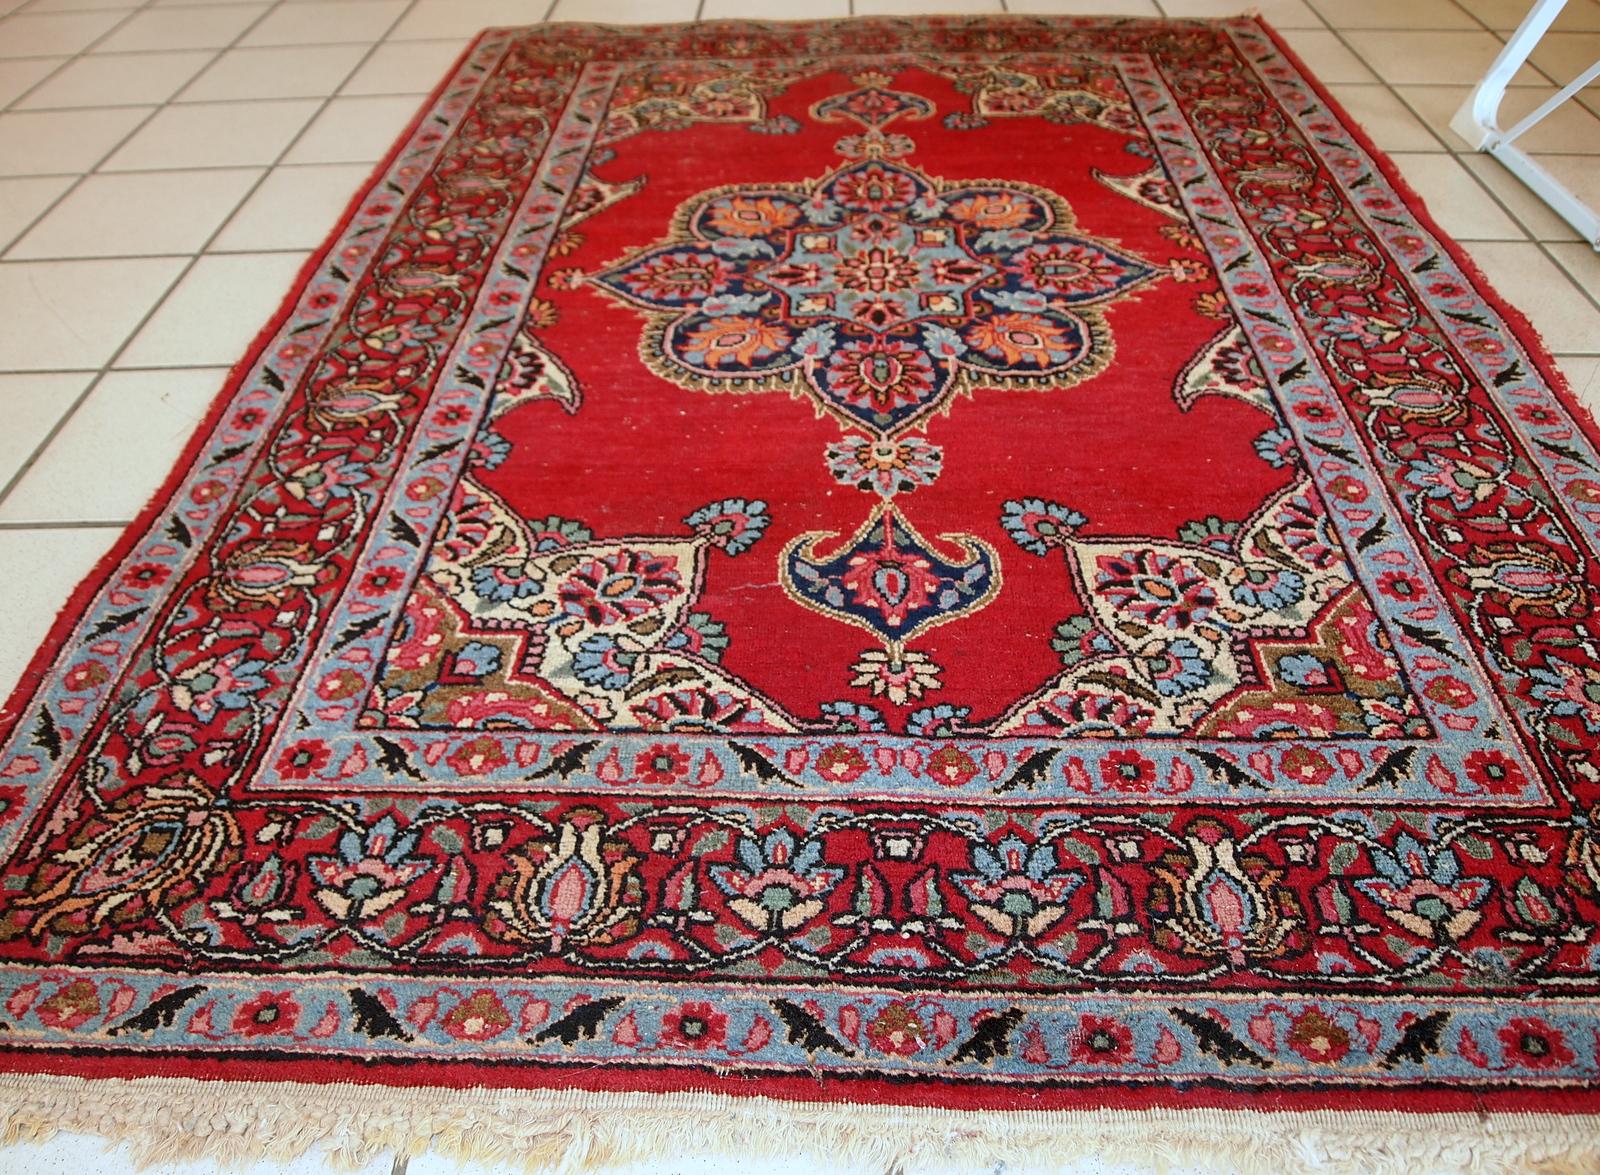 Vintage Kazvin Stil Teppich in leuchtend roter Farbe. Der Teppich stammt aus dem Ende des 20. Jahrhunderts. Es ist im Originalzustand, hat einige niedrige Flor.

- Zustand: original, etwas niedriger Flor,

- ca. 1970er Jahre,

- Größe: 3,3' x